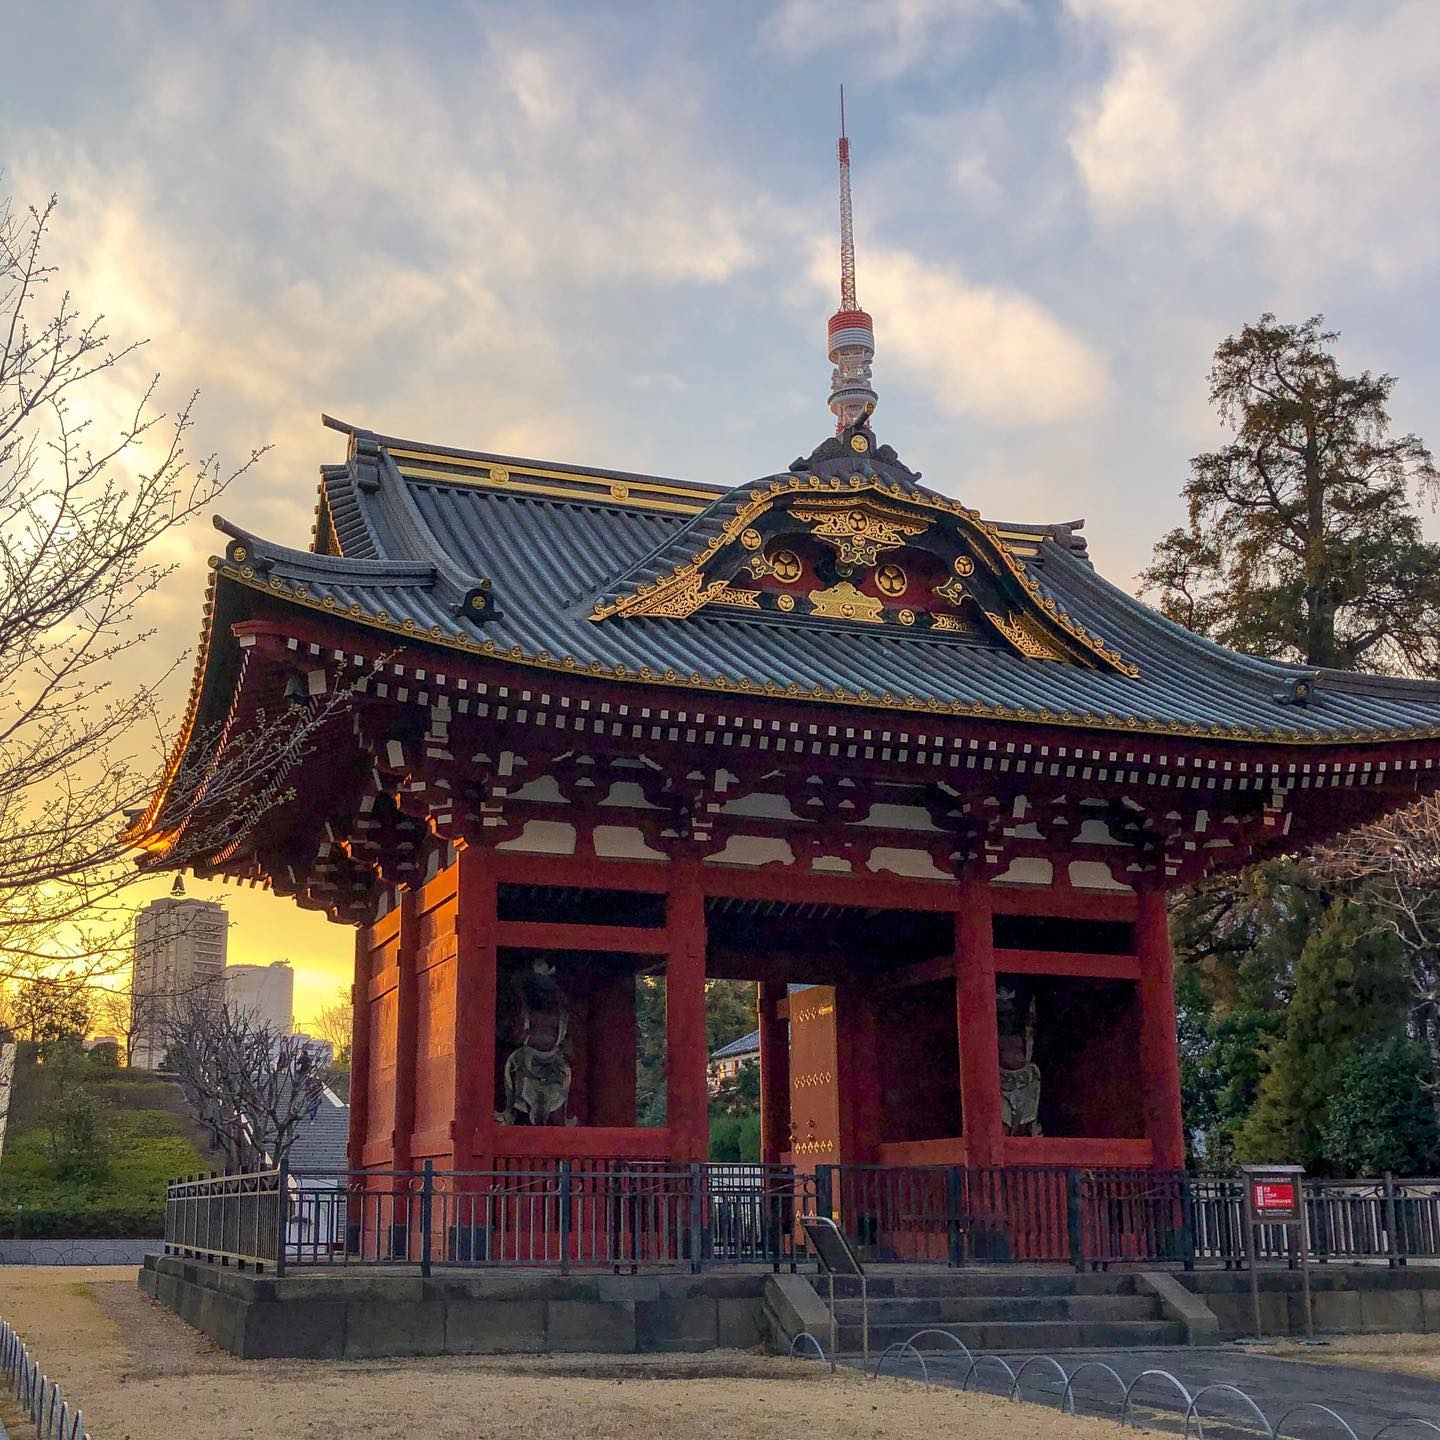 Long time no see! 🙋🏻‍♀️

Ya que media España parece estar en las Baleares, y aunque podría enseñaros mil sitios de mi maravillosa isla, por no saturar, os traigo un pedacito de Japón (again 🙈💖). 

Zozo-ji es un famoso templo budista en el centro de Tokyo, con unas vistas privilegiadas a la Torre de Tokyo, pero sabíais que allí mismo, entre todos los hoteles, estaba ubicado el mausoleo del Shōgun Tokugawa, Taitoku-in (también leído Daitoku-in)

Gran parte de este mausoleo se perdió durante la SGM (WWII). 3  de sus puertas fueron trasladadas a la prefectura de Saitama, pero aún podemos encontrar 2. Una de ellas es el actual acceso trasero de Zozo-ji y la otra linda con Shiba Park y es la que podéis ver en la foto: So-mon.

La puesta de sol rodeada de rascacielos, parques, un cementerio, templos budistas, la torre de Tokyo y los restos del mausoleo de un antiguo Shōgun del período Edo es toda una vorágine de sensaciones. 

Desde luego Japón es la combinación perfecta entre tradición y avance, y sin duda Tokyo su mayor embajador.

📍Taitoku-in So-mon, Shiba Park, Tokyo

#japan #japon #nihon #visitjapanes #tokyo #tb #traveladdict #traveller #shibapark #zozoji #daitokuin #taitokuin #somon #mallorquinesporelmundo #wanderer #nipon #lilyinwanderland #inlovewiththeworld #exoloringtheglobe #iamdigitalnomad #revolucionviajera #mausoleo #shogun